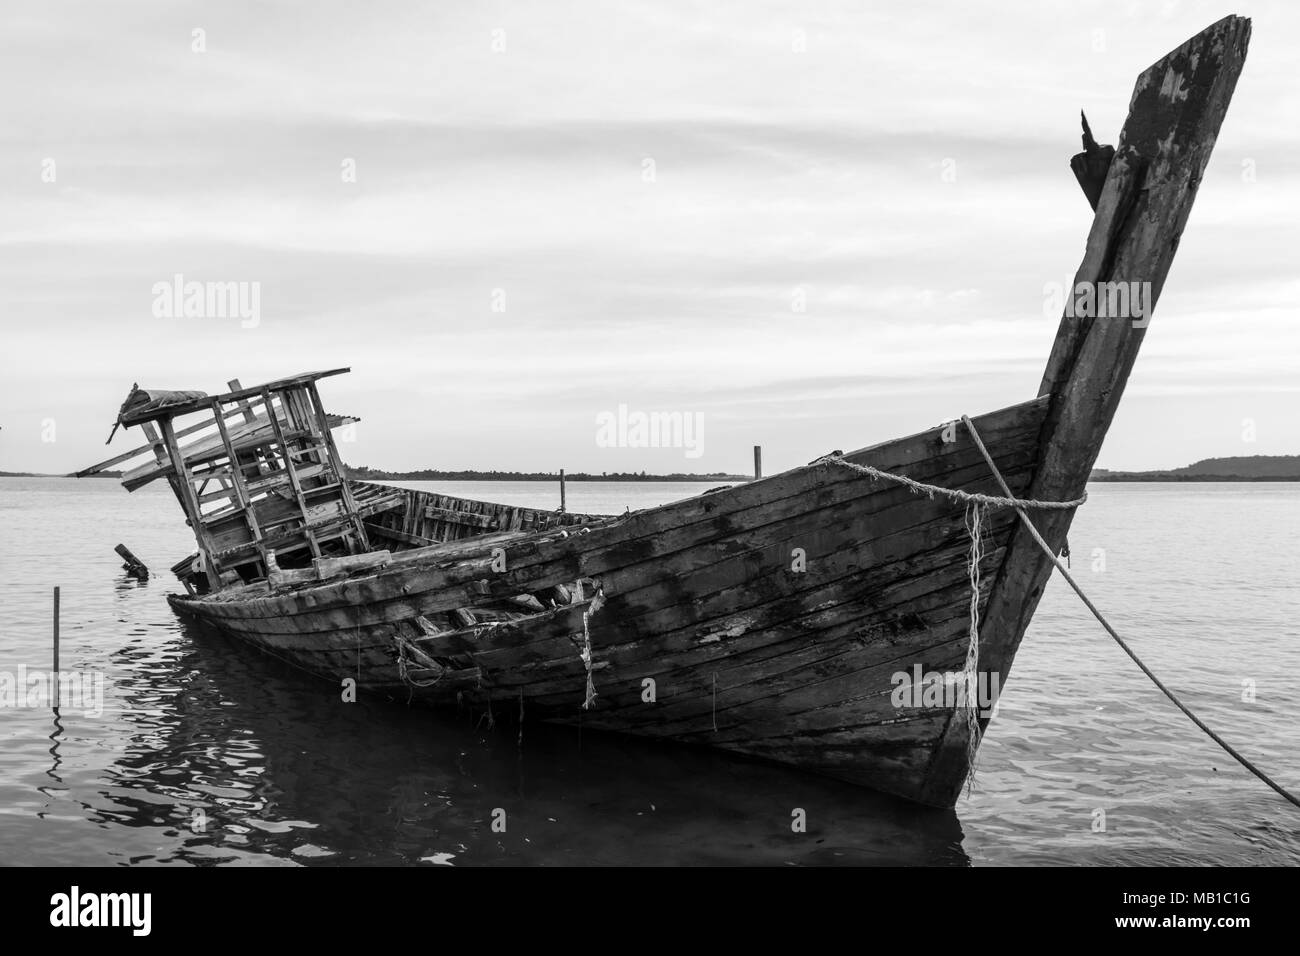 Un naufragio/nave di legno/barche in legno/barche abbandonate sulla spiaggia - Bintan Island, Indonesia Foto Stock